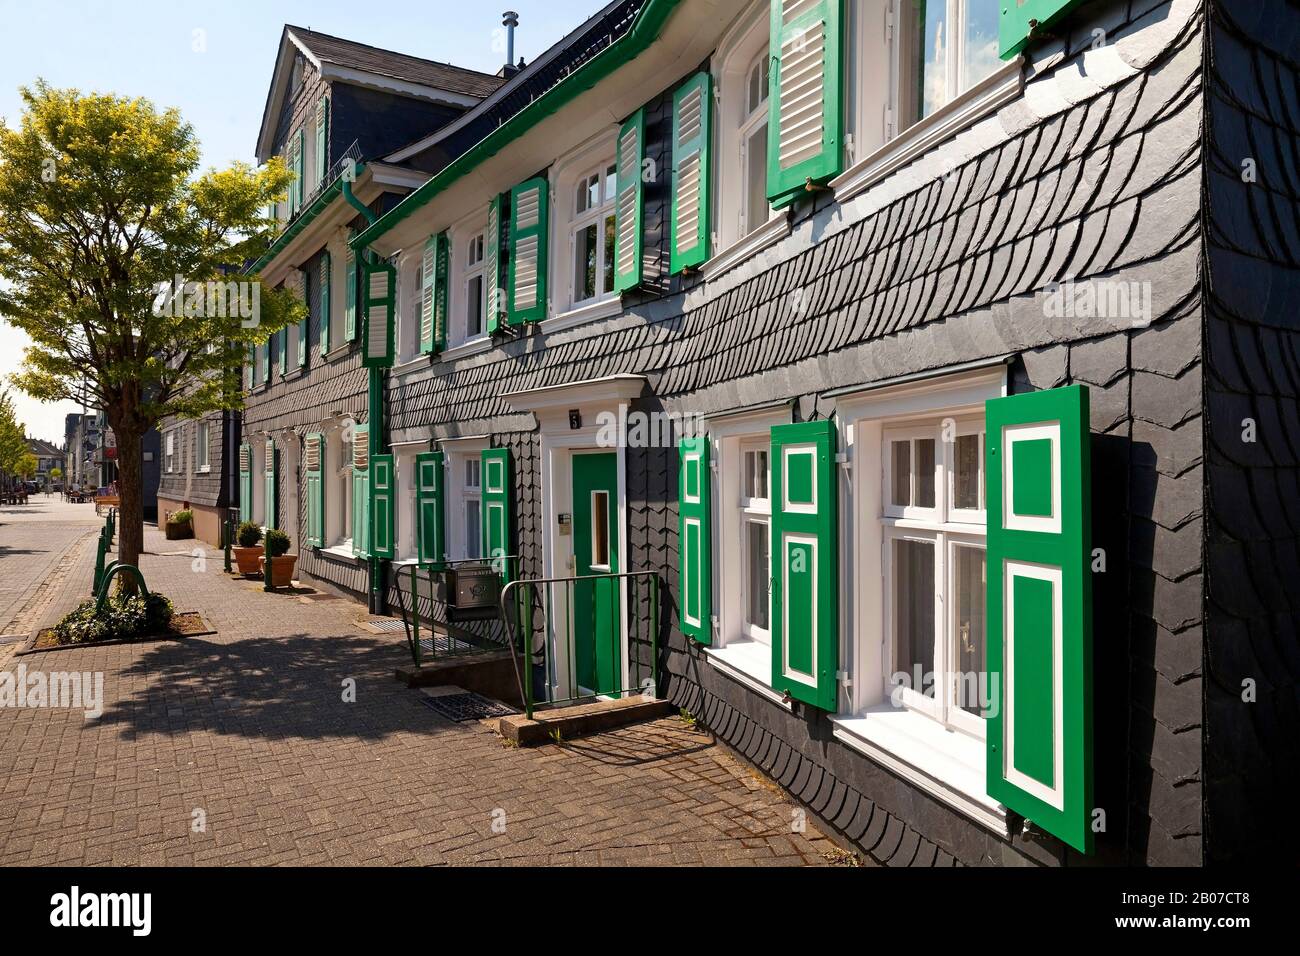 Maisons à colombages, Bergischer Dreiklang avec les couleurs noir, blanc et vert, Allemagne, Rhénanie-du-Nord-Westphalie, Bergisches Land, Radevormwald Banque D'Images